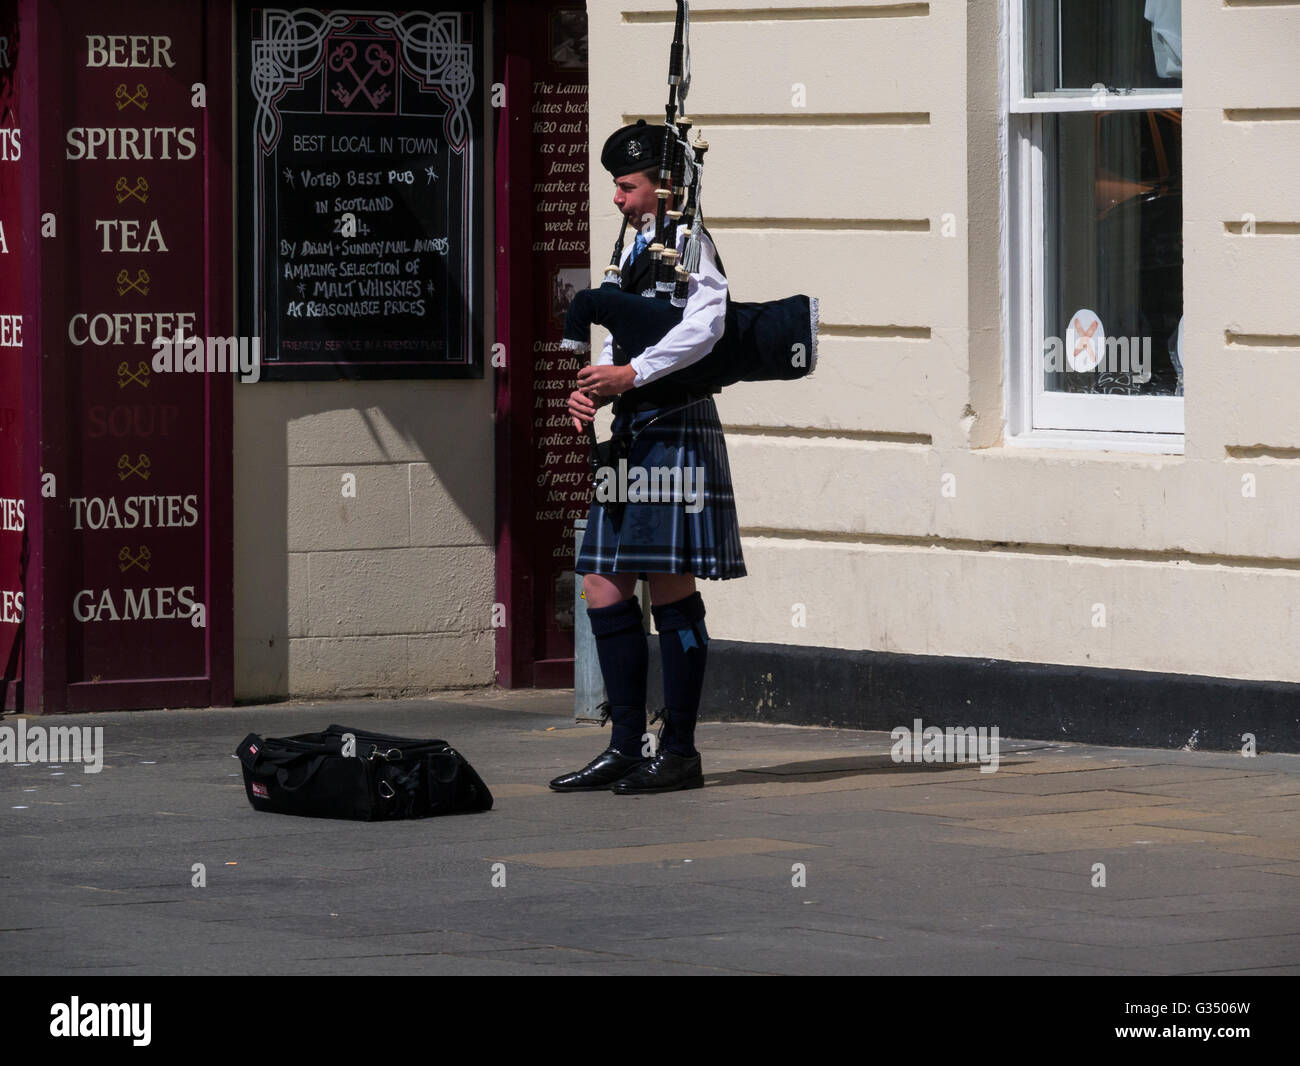 Piper écossais jouer de la cornemuse dans la rue de Burgh Royal de St Andrews Fife Ecosse en costume national jouant des airs écossais Banque D'Images